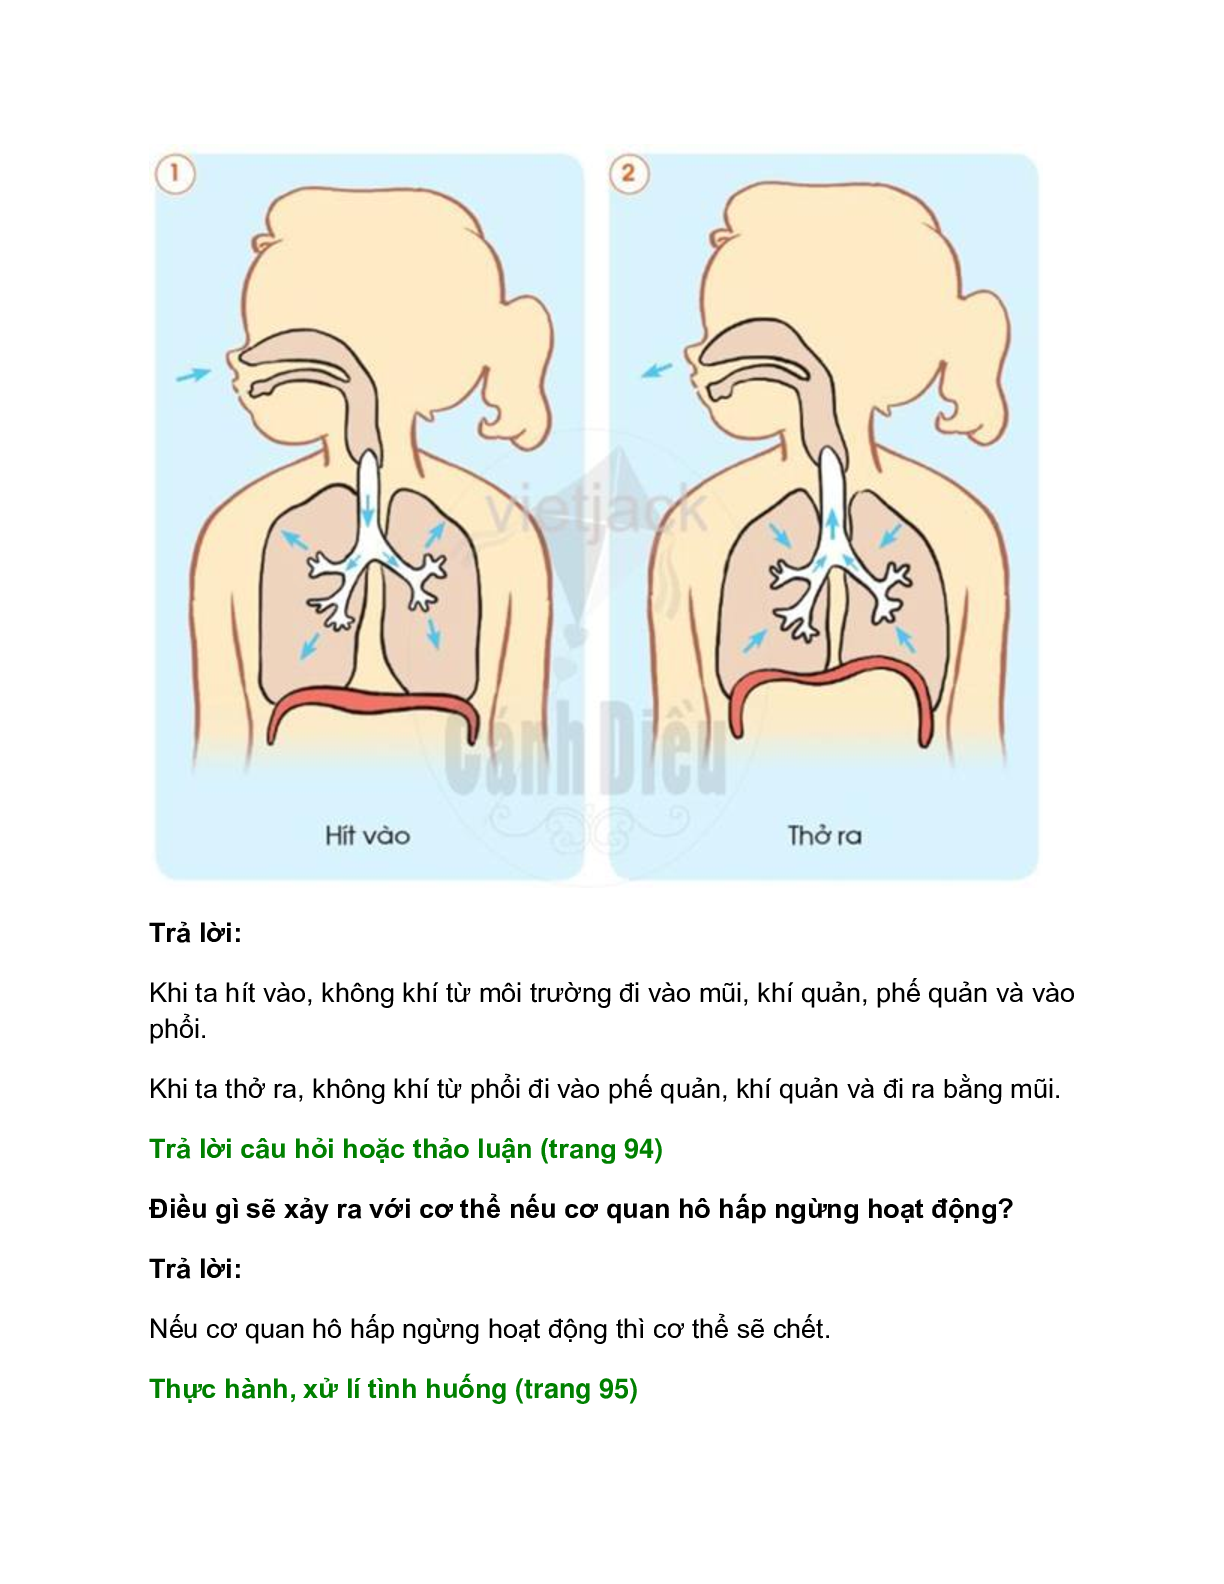 Giải SGK Tự nhiên và Xã hội lớp 2 trang 92, 93, 94, 95 Bài 16: Cơ quan hô hấp – Cánh diều (trang 4)